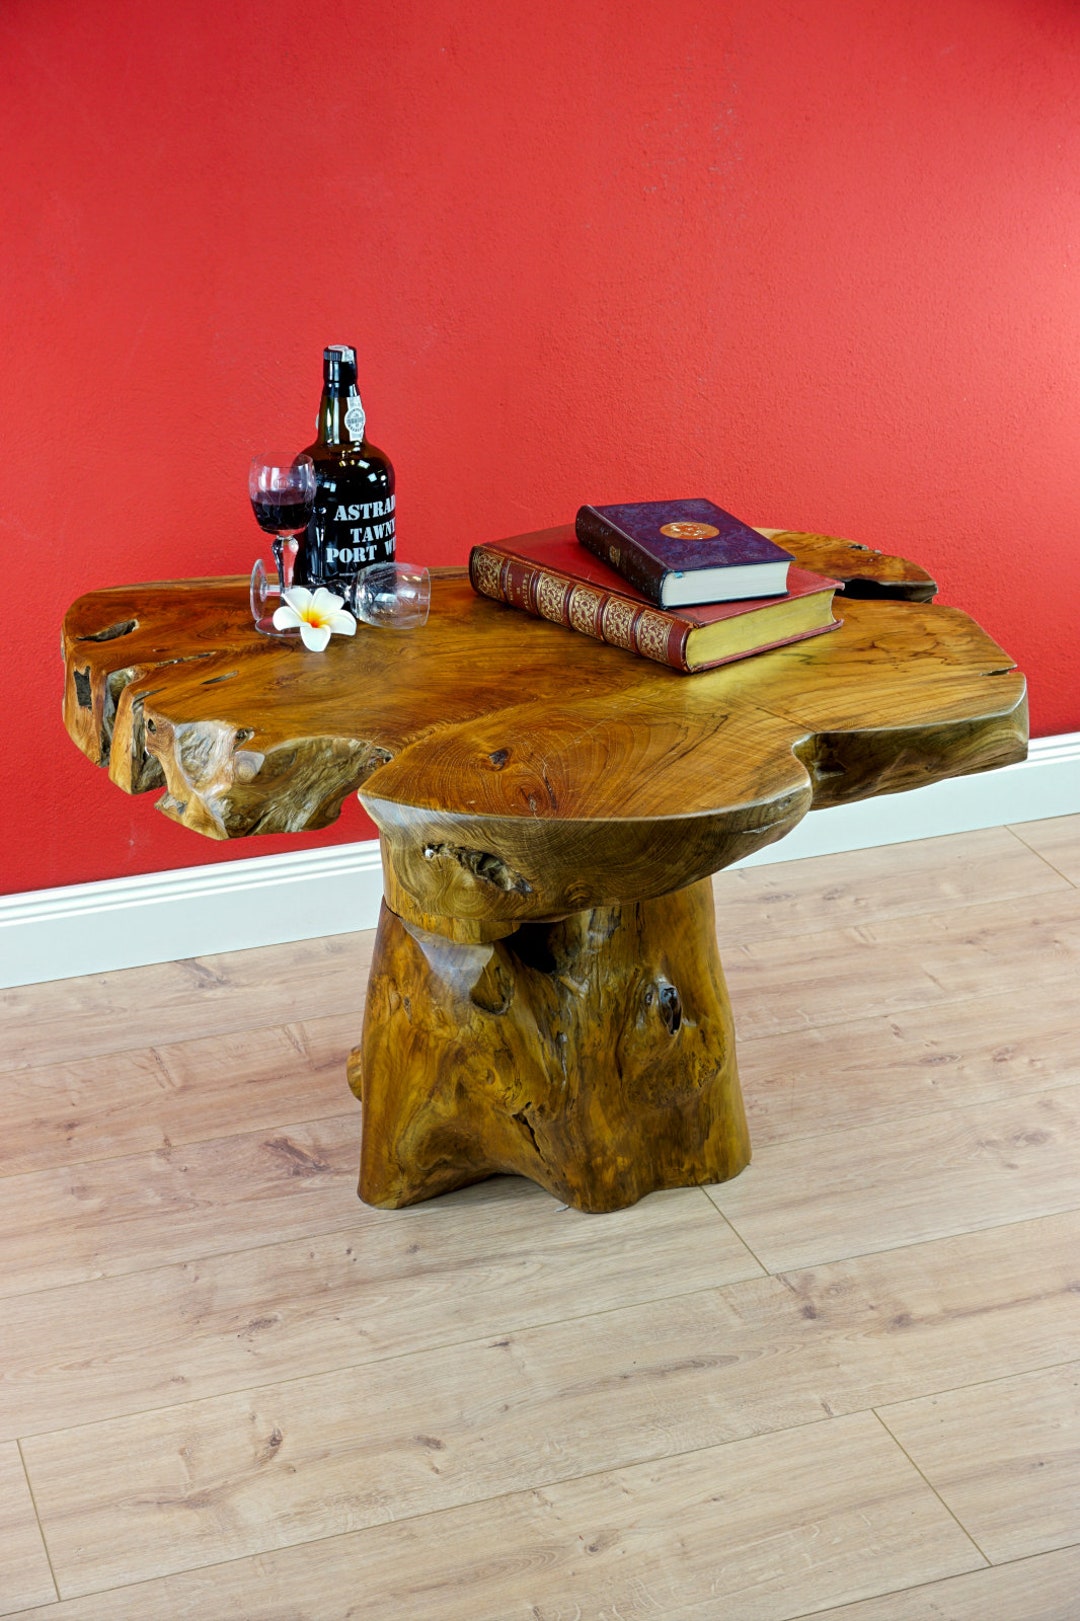 Mesa de tronco de árbol SIGNATURE, mesa de salón única, madera